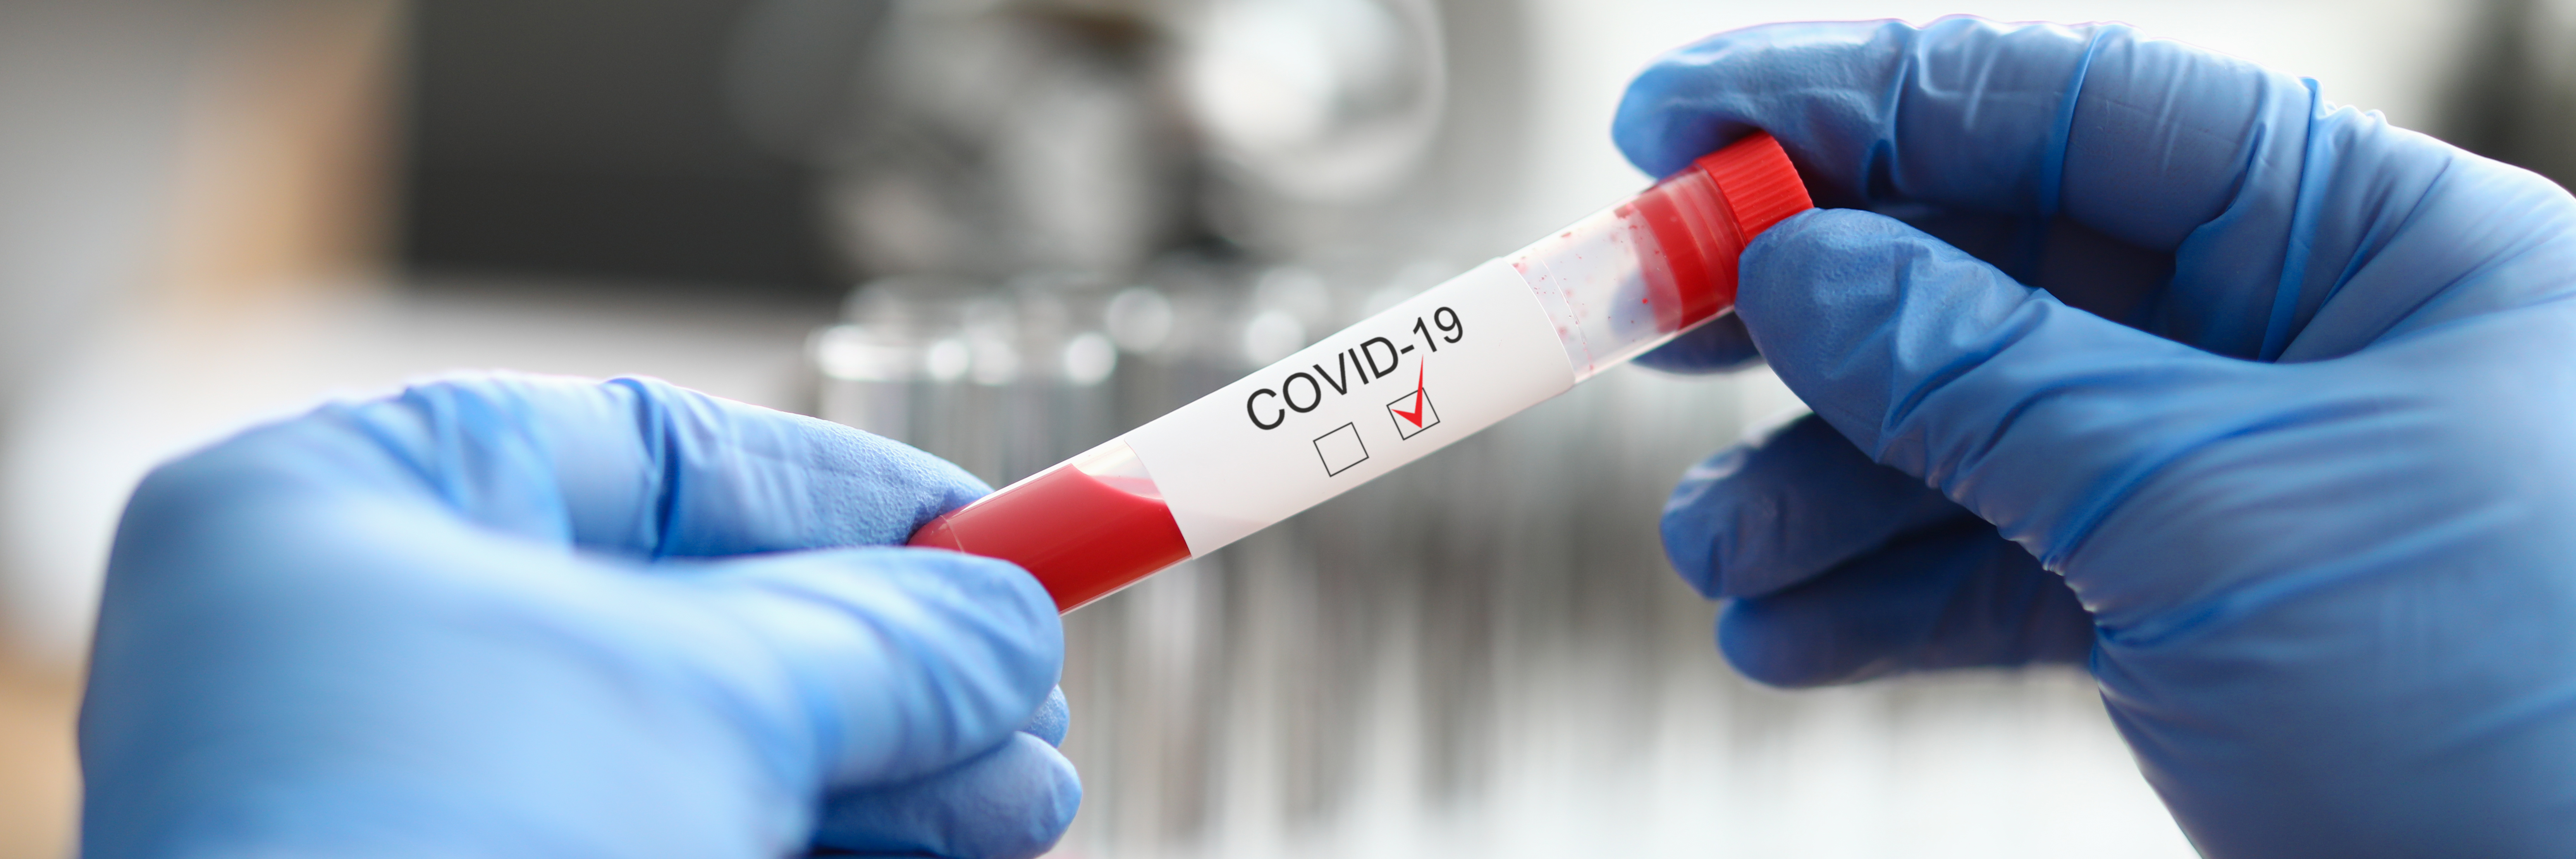 Le concept de bouclier immunitaire suggère d’exploiter l'immunité présumée des personnes rétablies de l'infection à coronavirus.